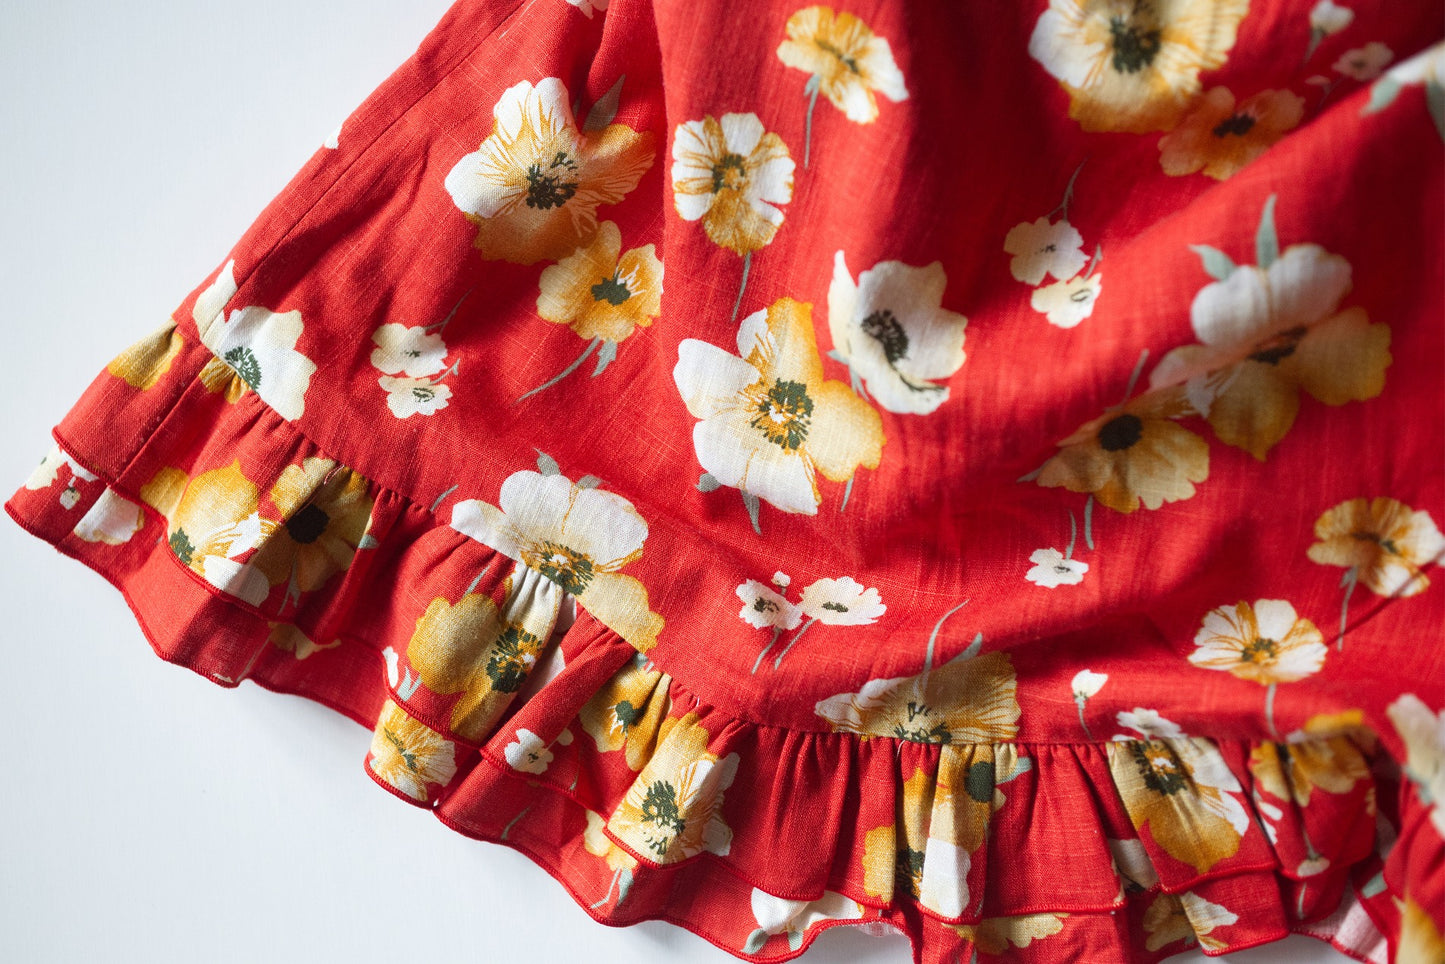 ajouter orginal vintage sampling skirt